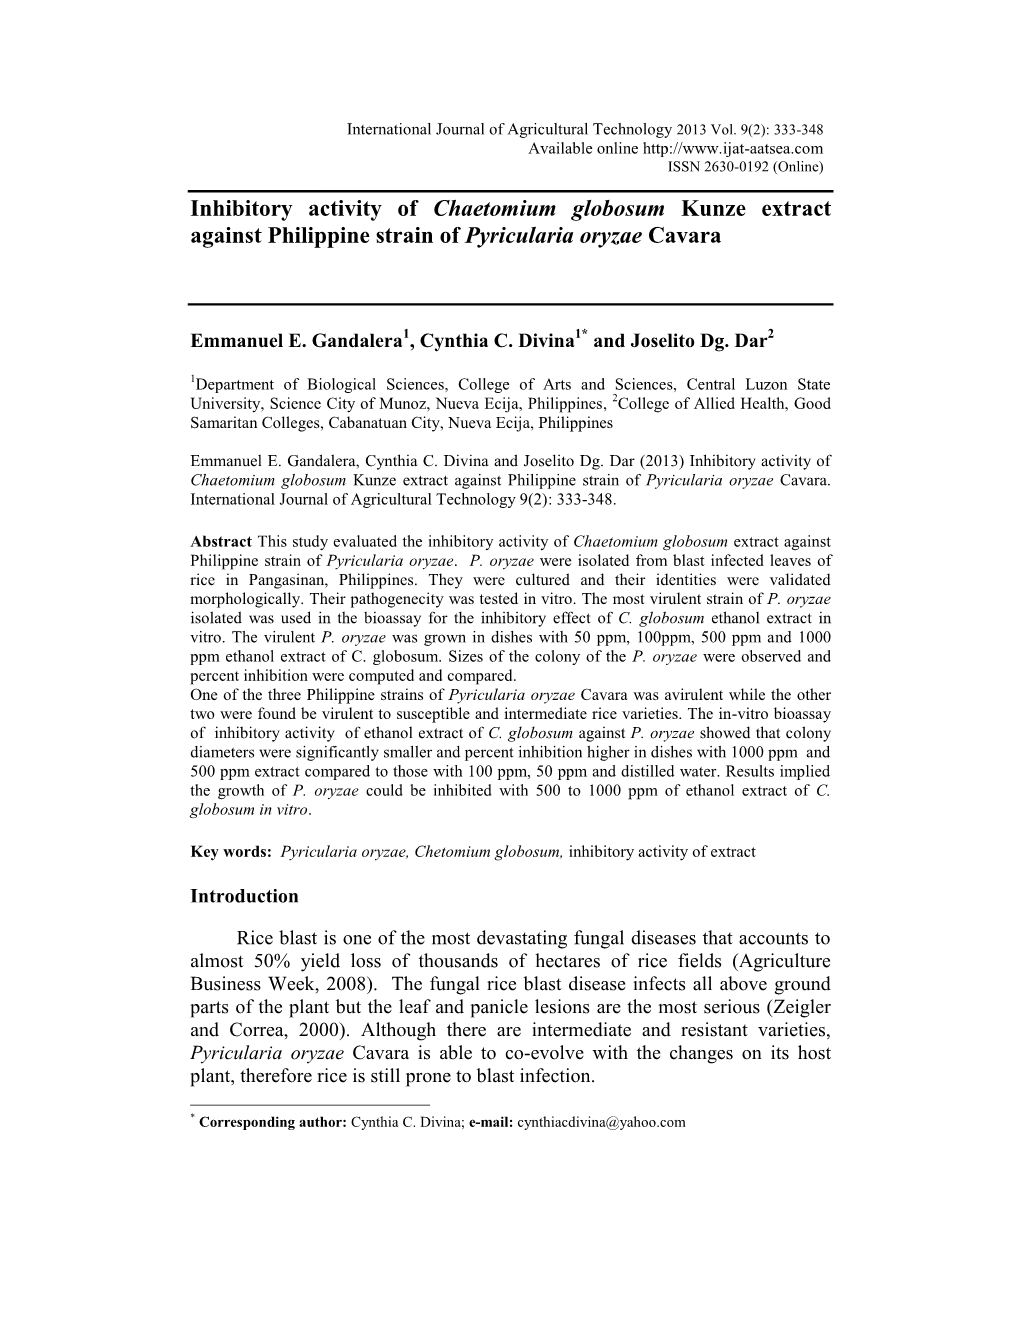 Inhibitory Activity of Chaetomium Globosum Kunze Extract Against Philippine Strain of Pyricularia Oryzae Cavara